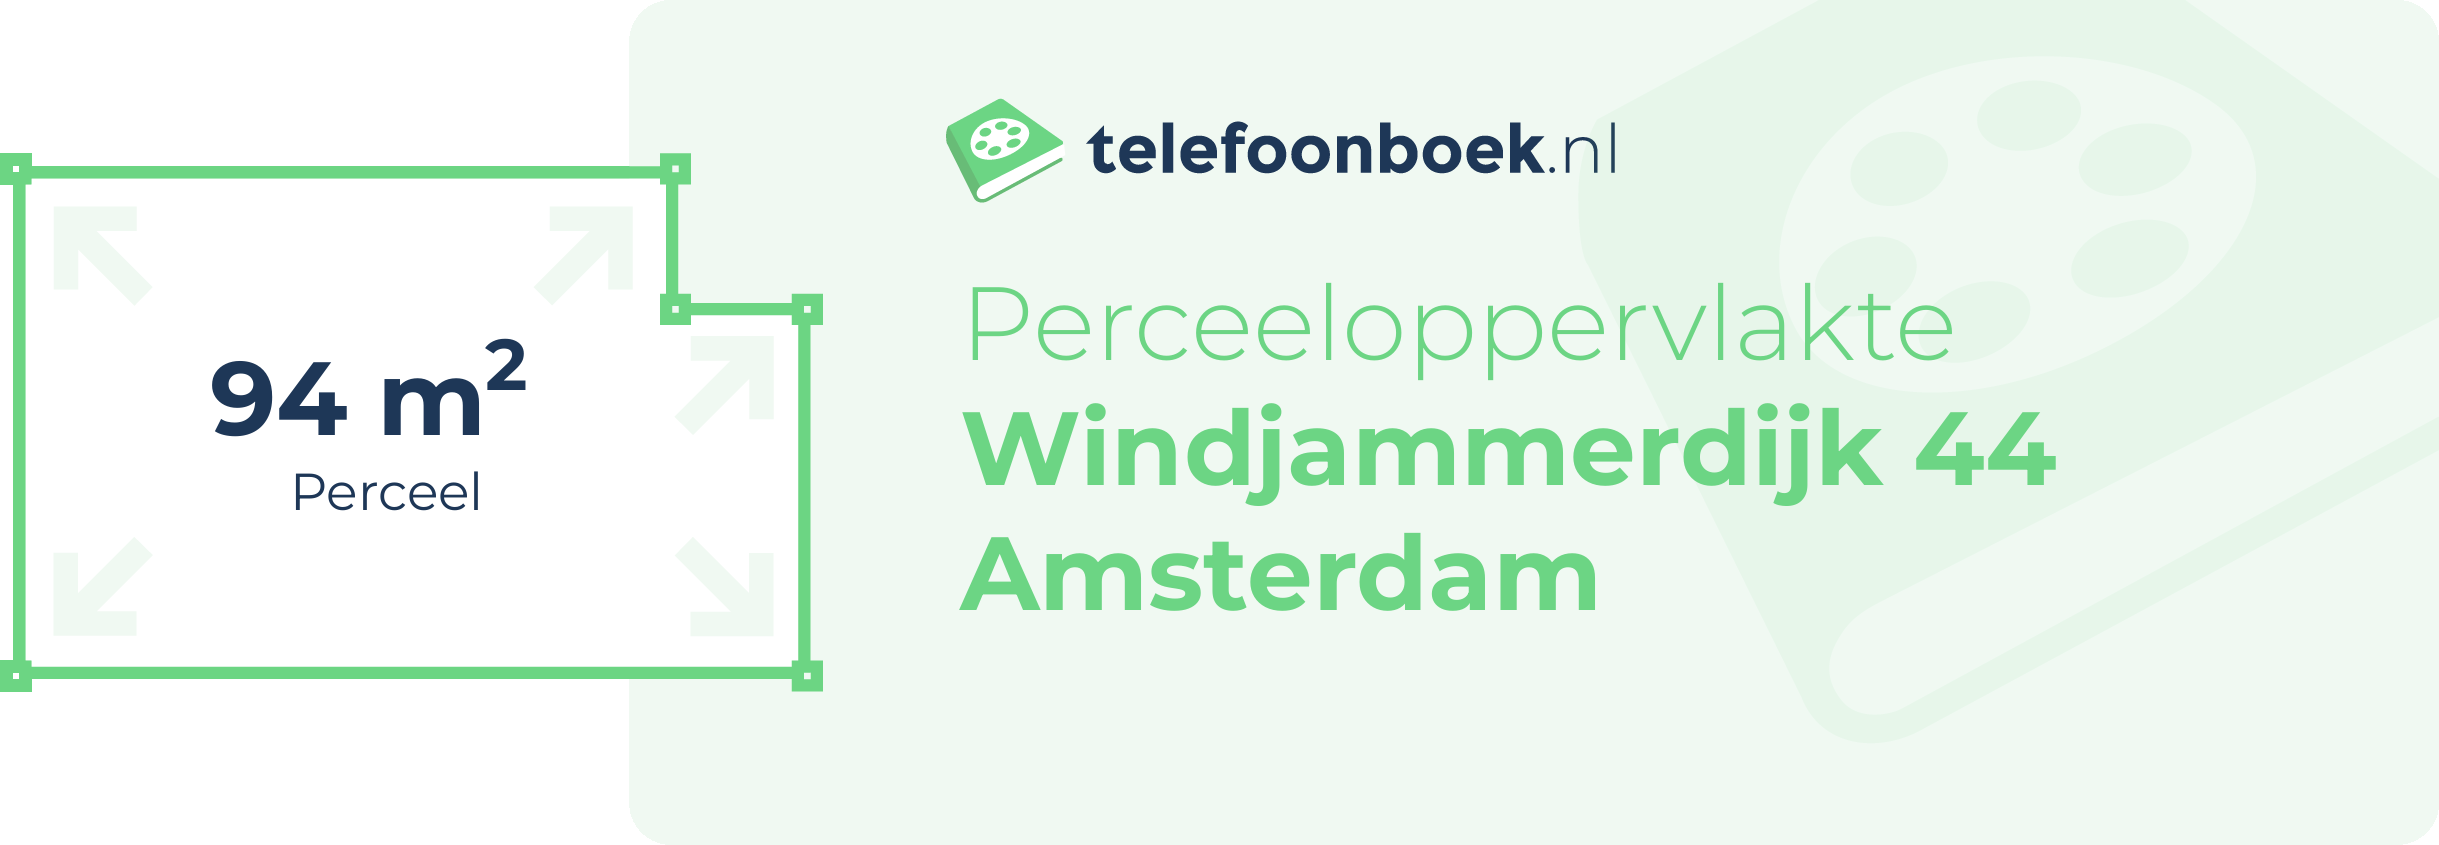 Perceeloppervlakte Windjammerdijk 44 Amsterdam